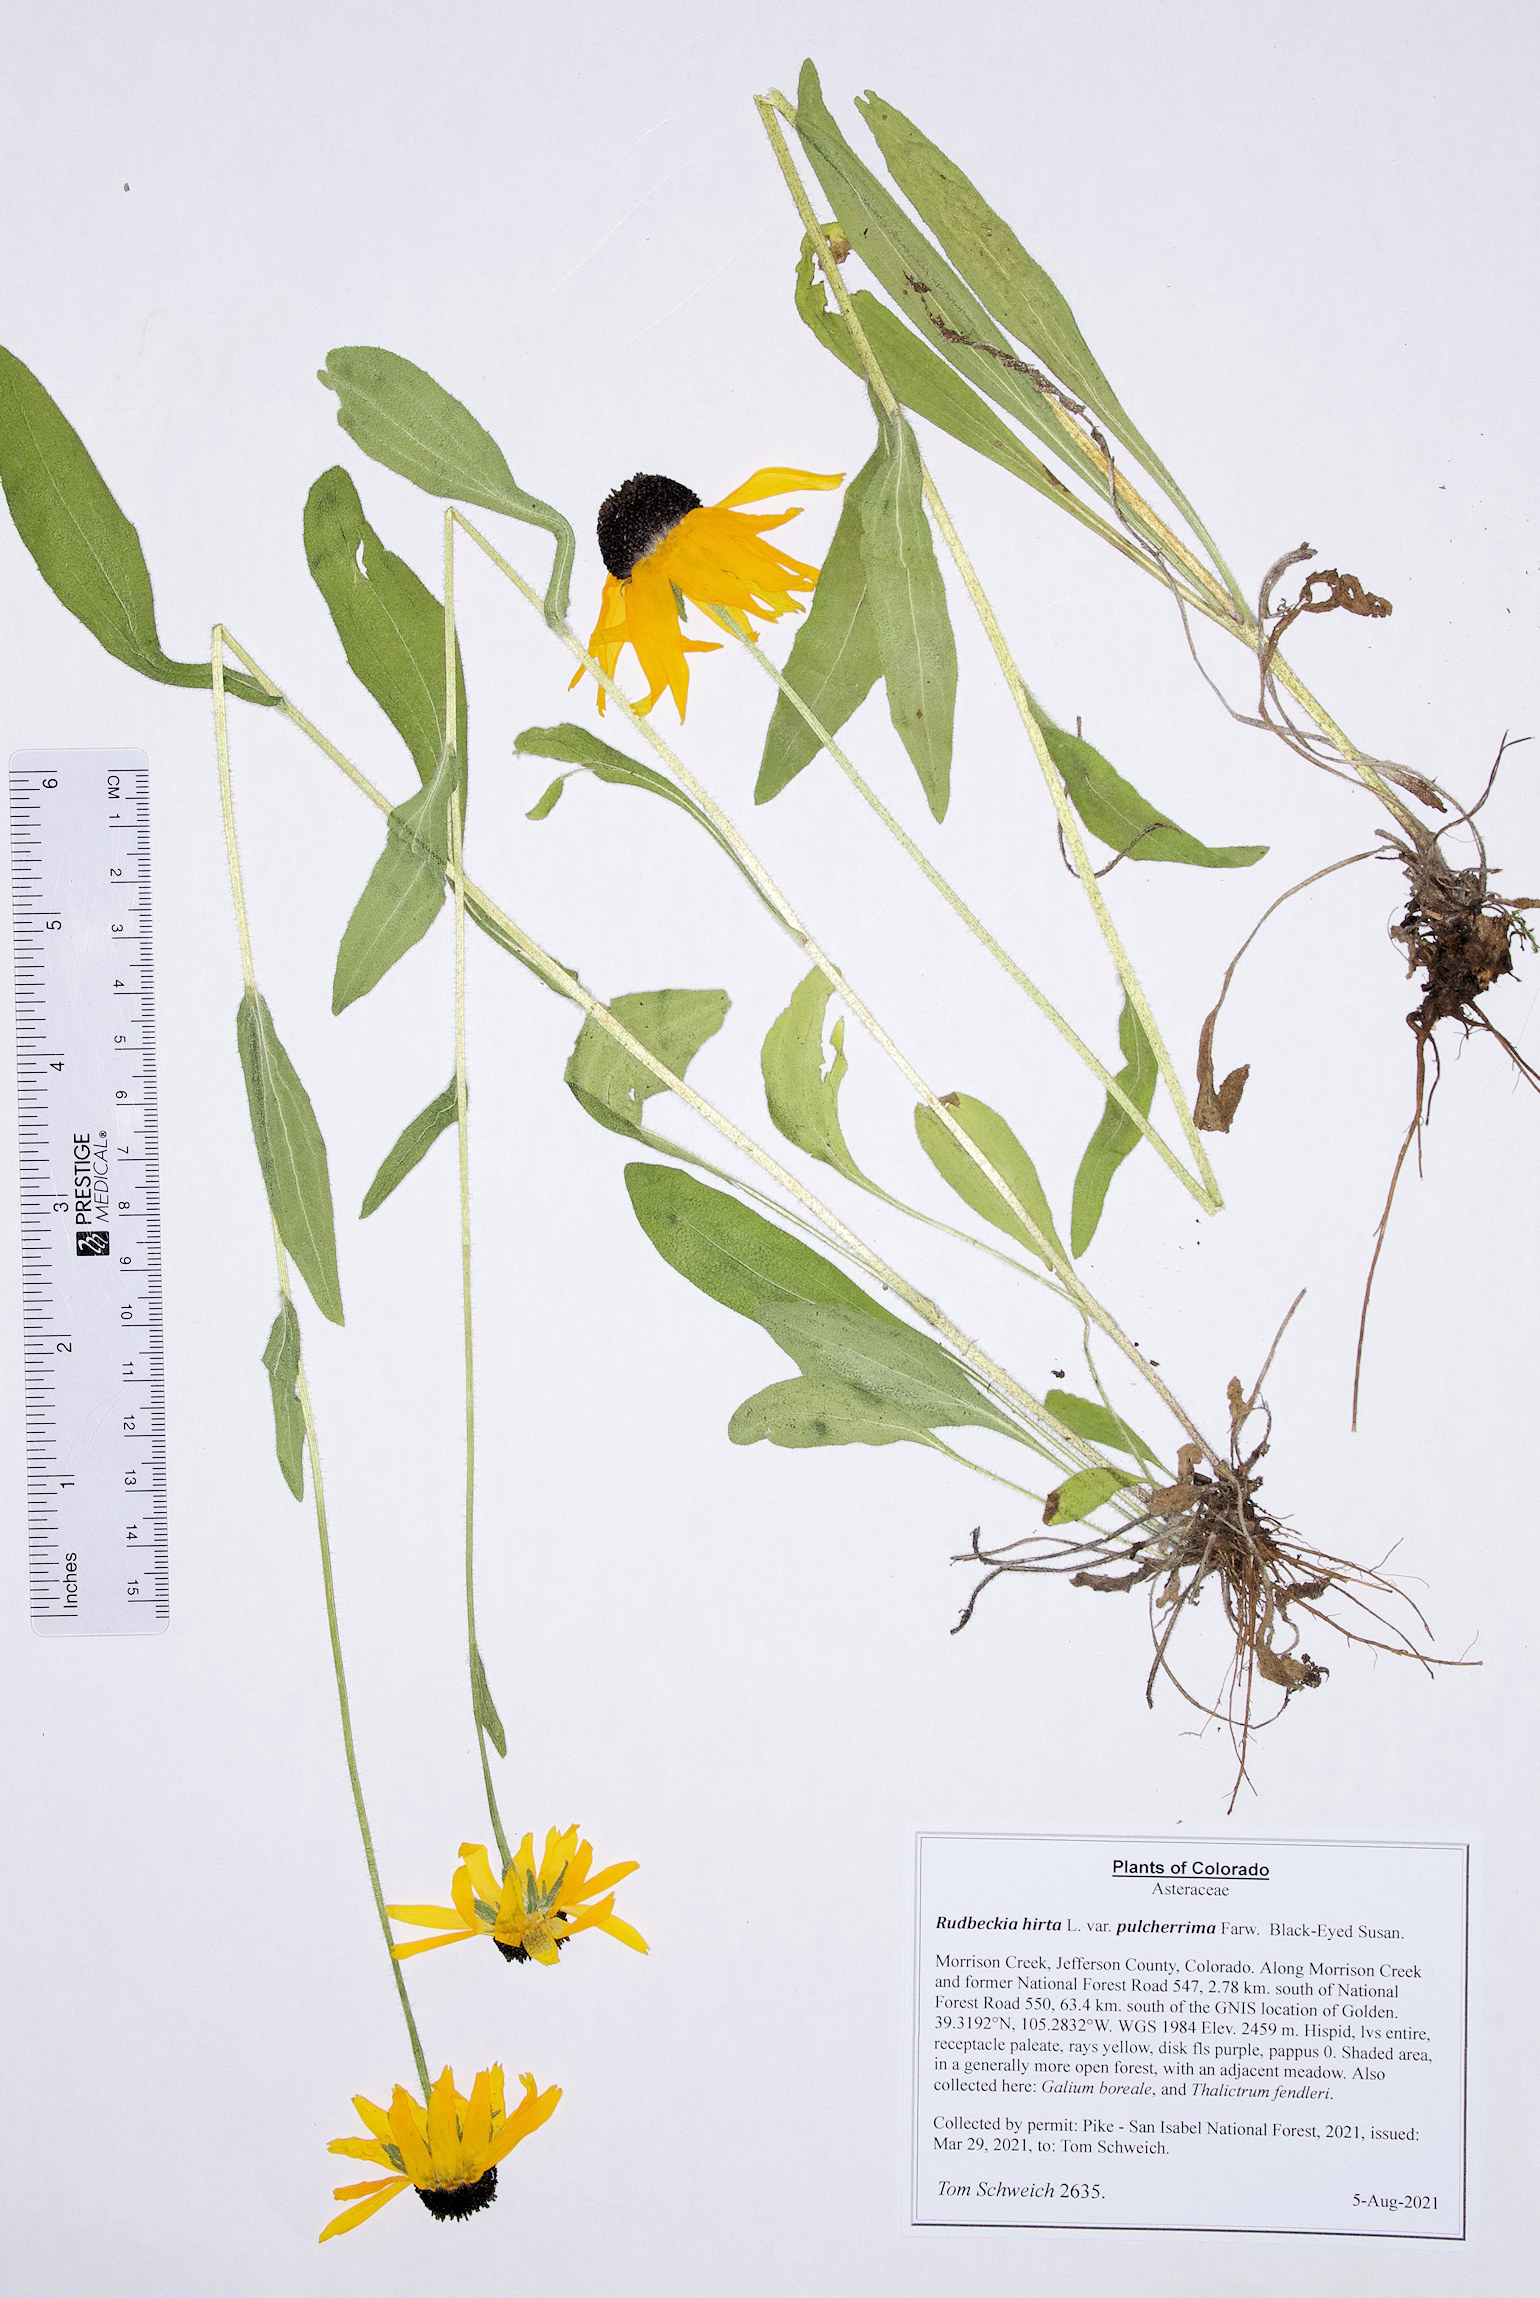 Asteraceae Rudbeckia nirta pulcherrima